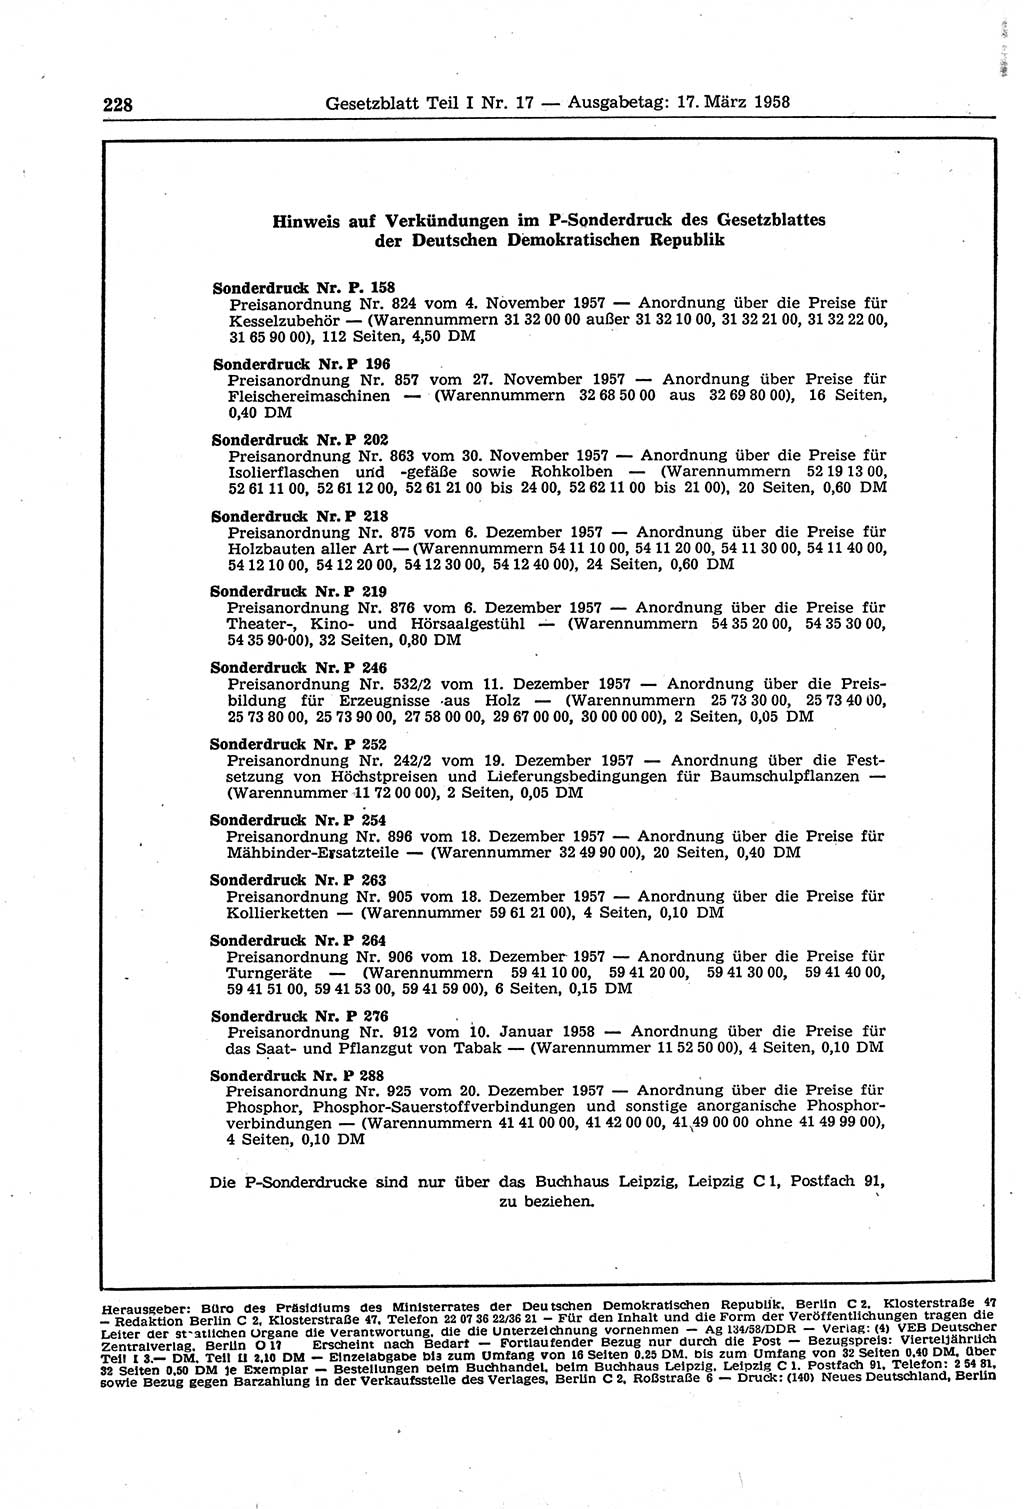 Gesetzblatt (GBl.) der Deutschen Demokratischen Republik (DDR) Teil Ⅰ 1958, Seite 228 (GBl. DDR Ⅰ 1958, S. 228)